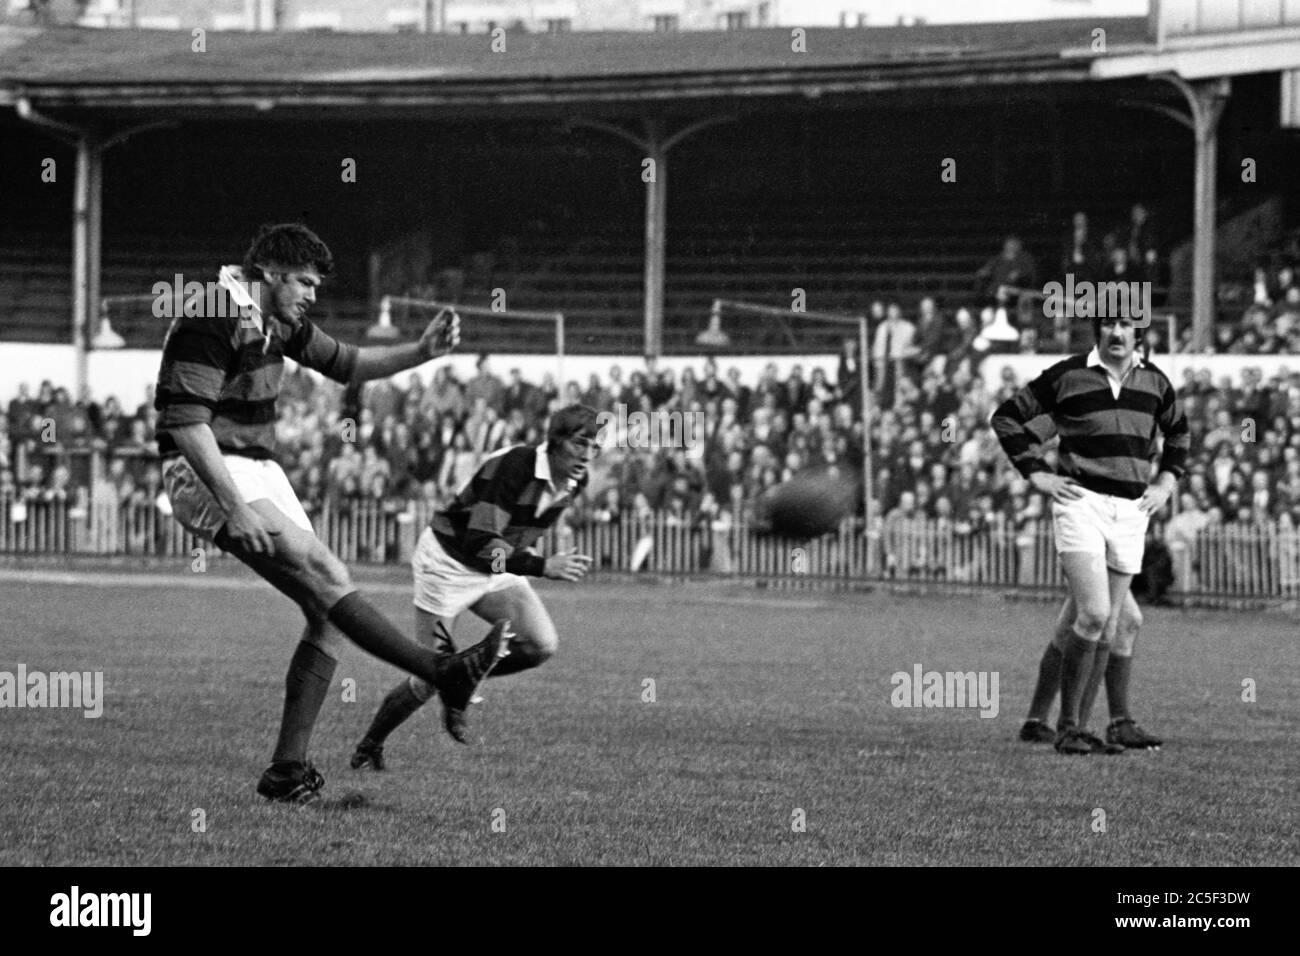 Aberavon zweite Reihe Allan Marin nimmt eine Umwandlung mit seinem klassischen Torpedo-Stil Kick im National Stadium, Cardiff während des WRU Cup Final zwischen Aberavon und Llanelli am 27. April 1974. Stockfoto